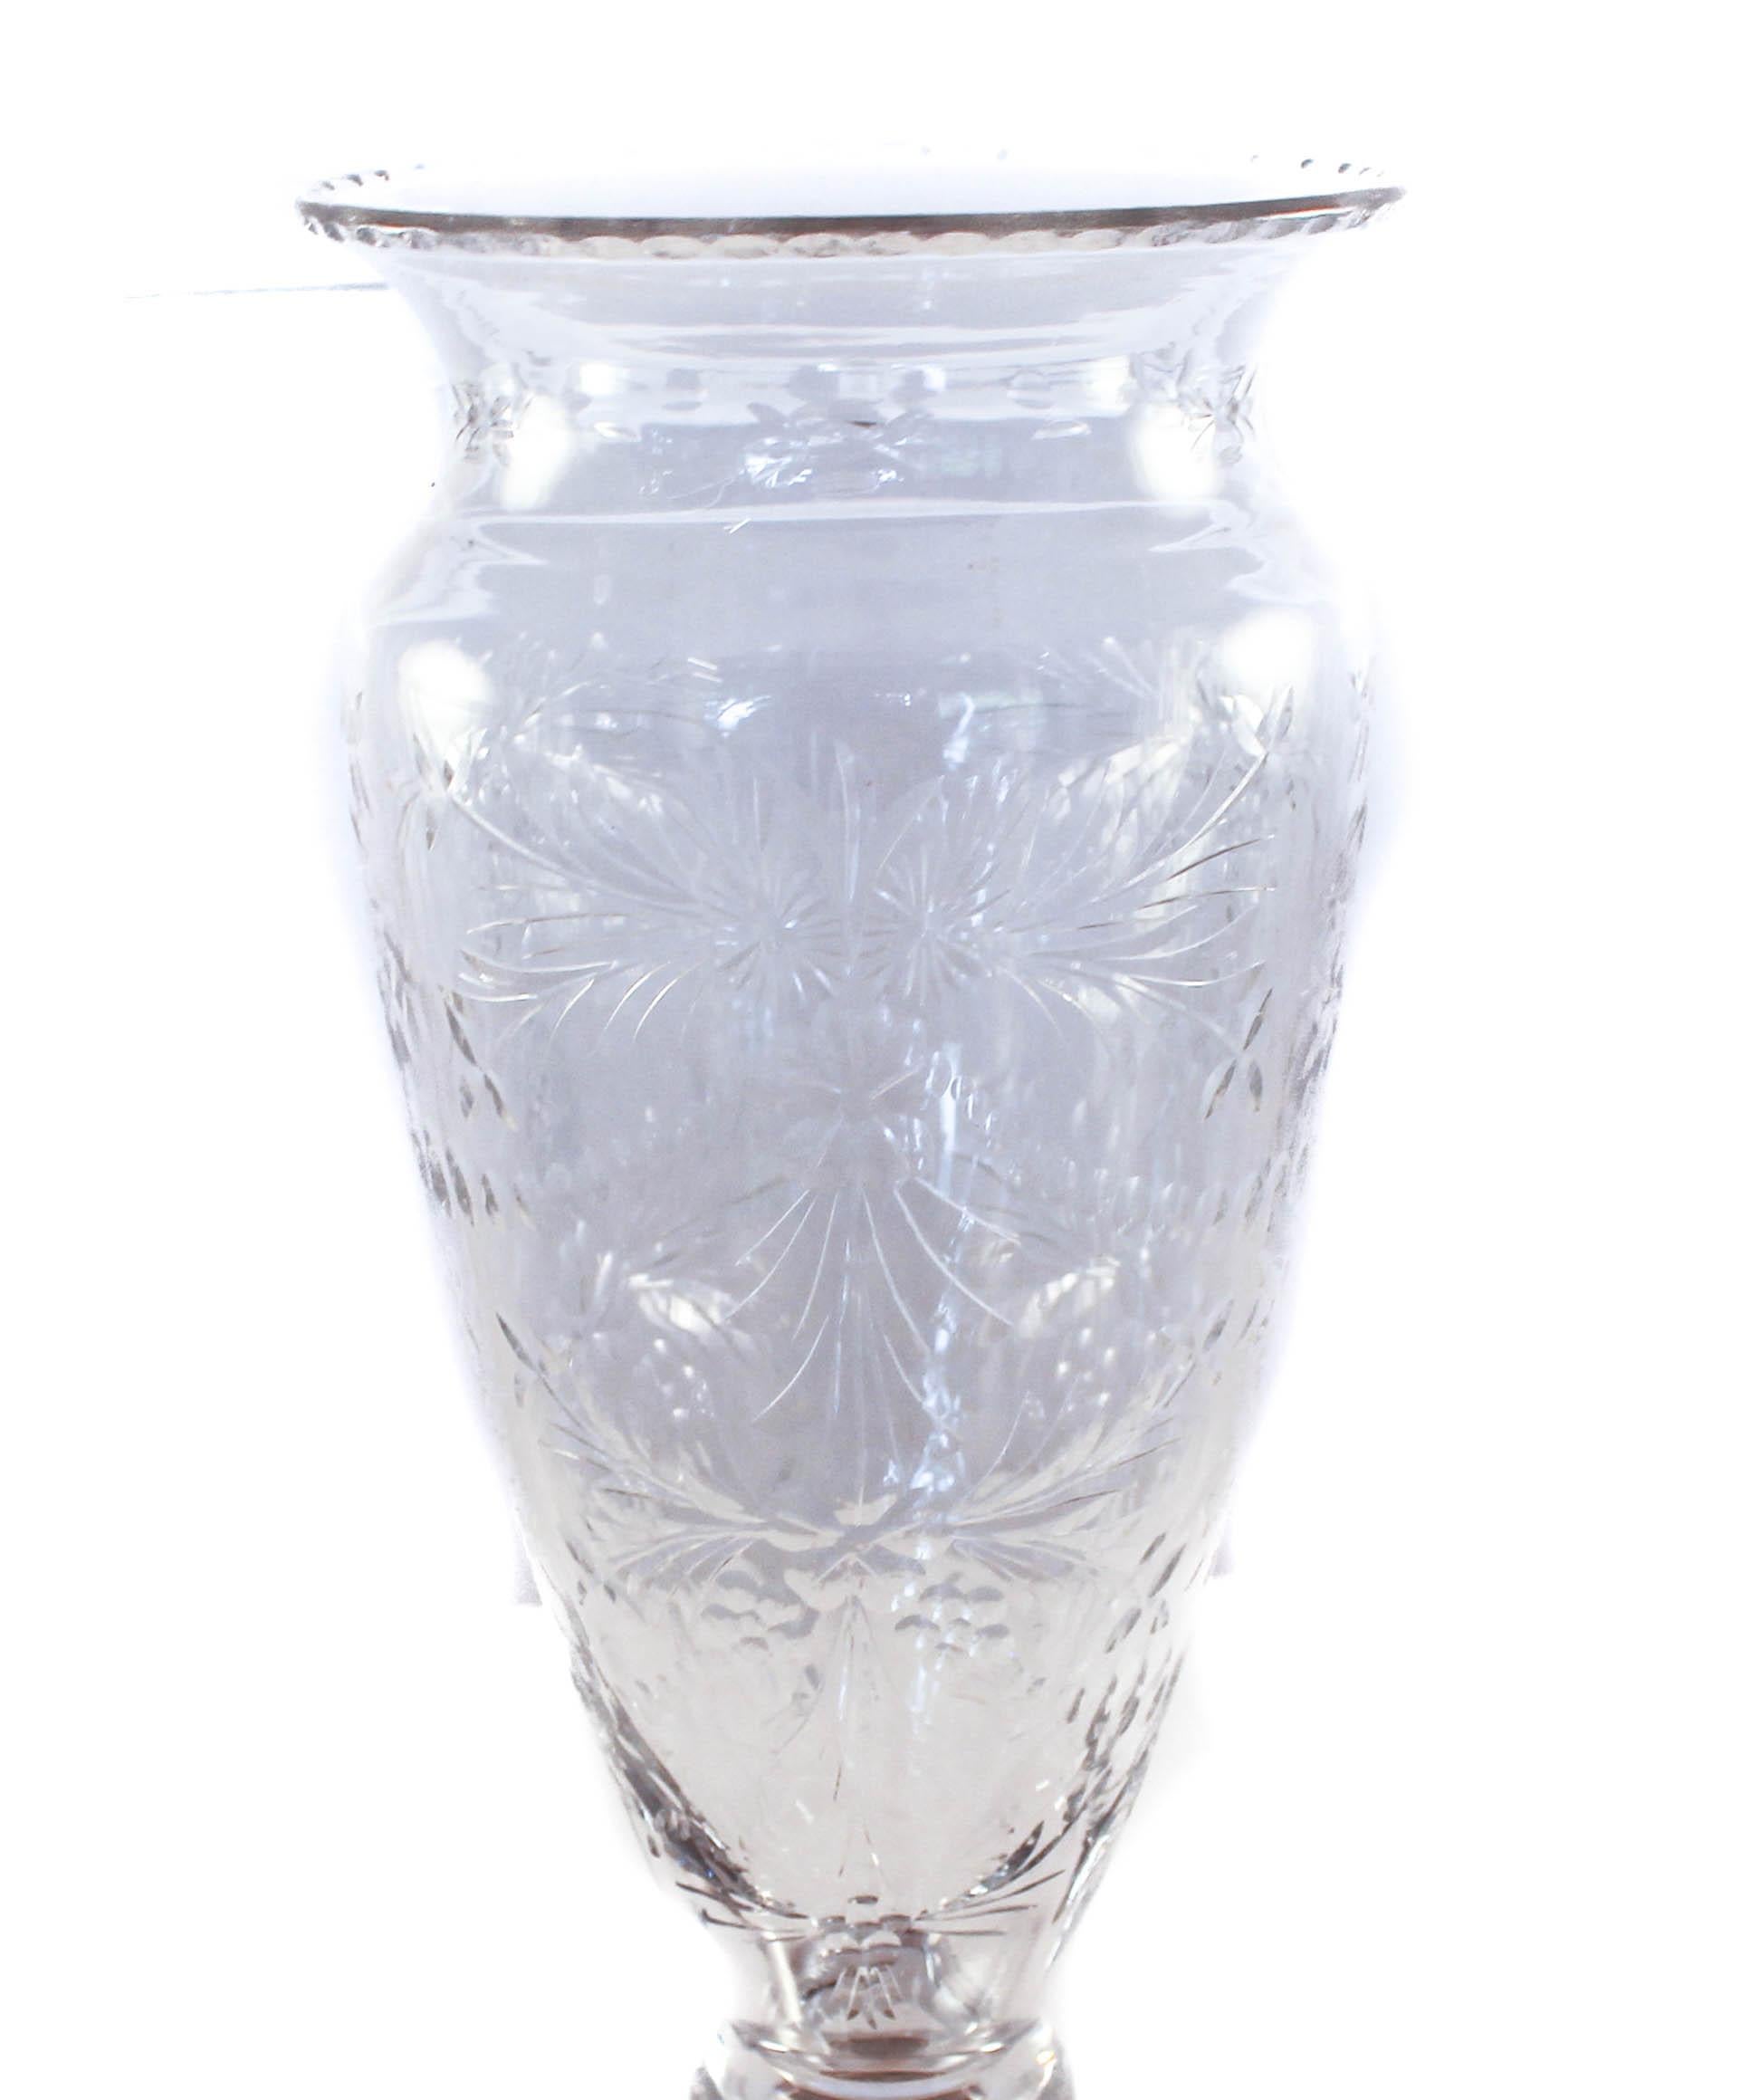 Nous sommes fiers d'offrir ce vase en sterling et cristal de la Hawkes Glass Company de Corning, NY.
Basé à Corning, NY, T.G. La société Hawkes & Co. (vers 1880-1959) a été créée par Thomas Gibbons Hawkes (1846-1913). Né en Irlande, Hawkes a